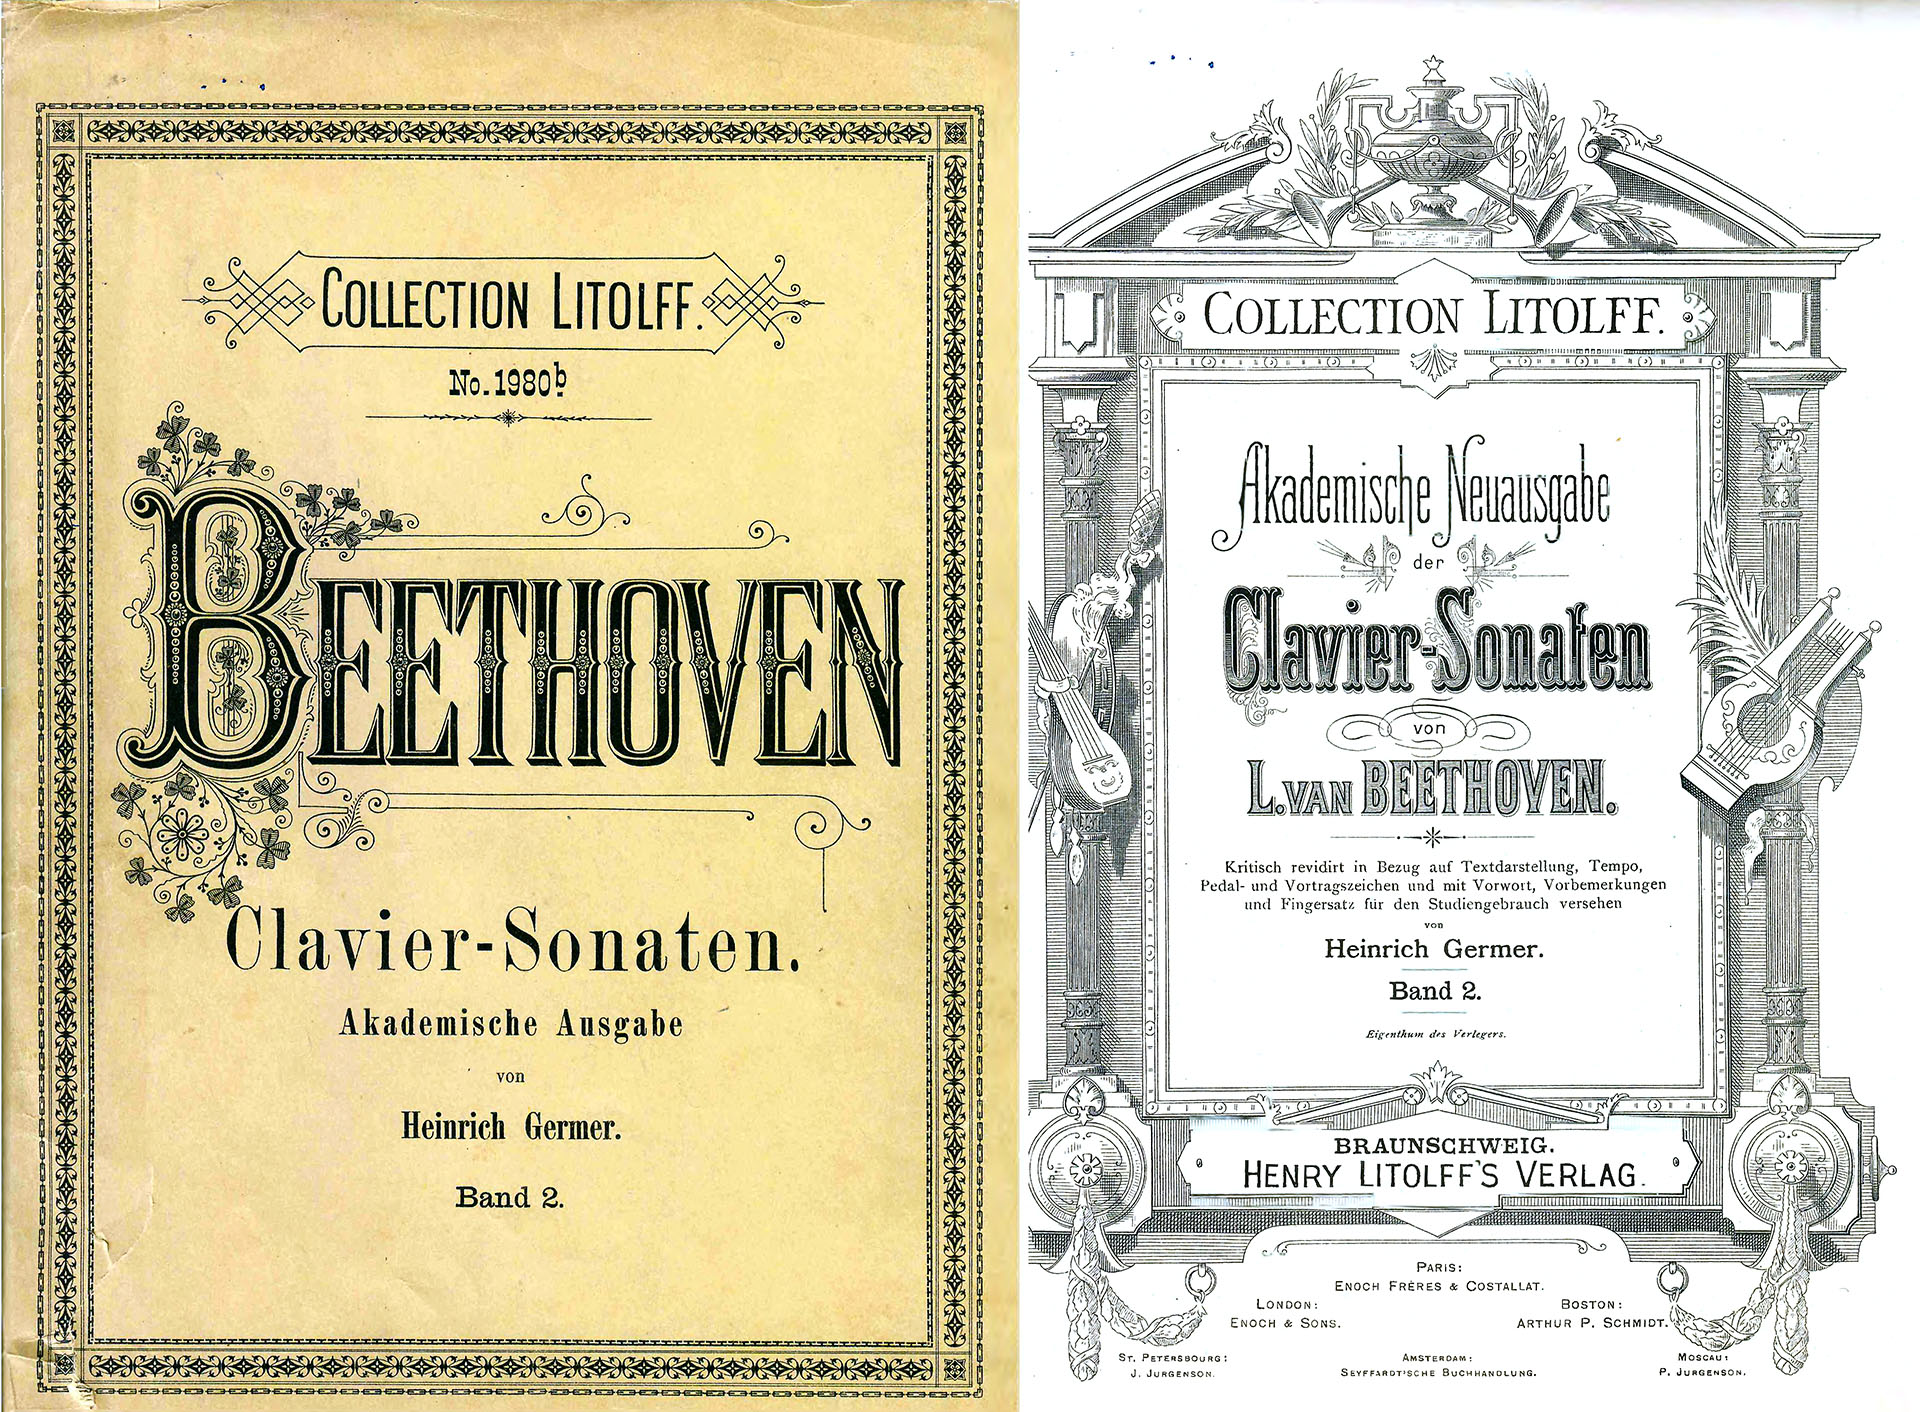 Beethoven - Clavier - Sonaten, Band 2 - Heinrich Germer